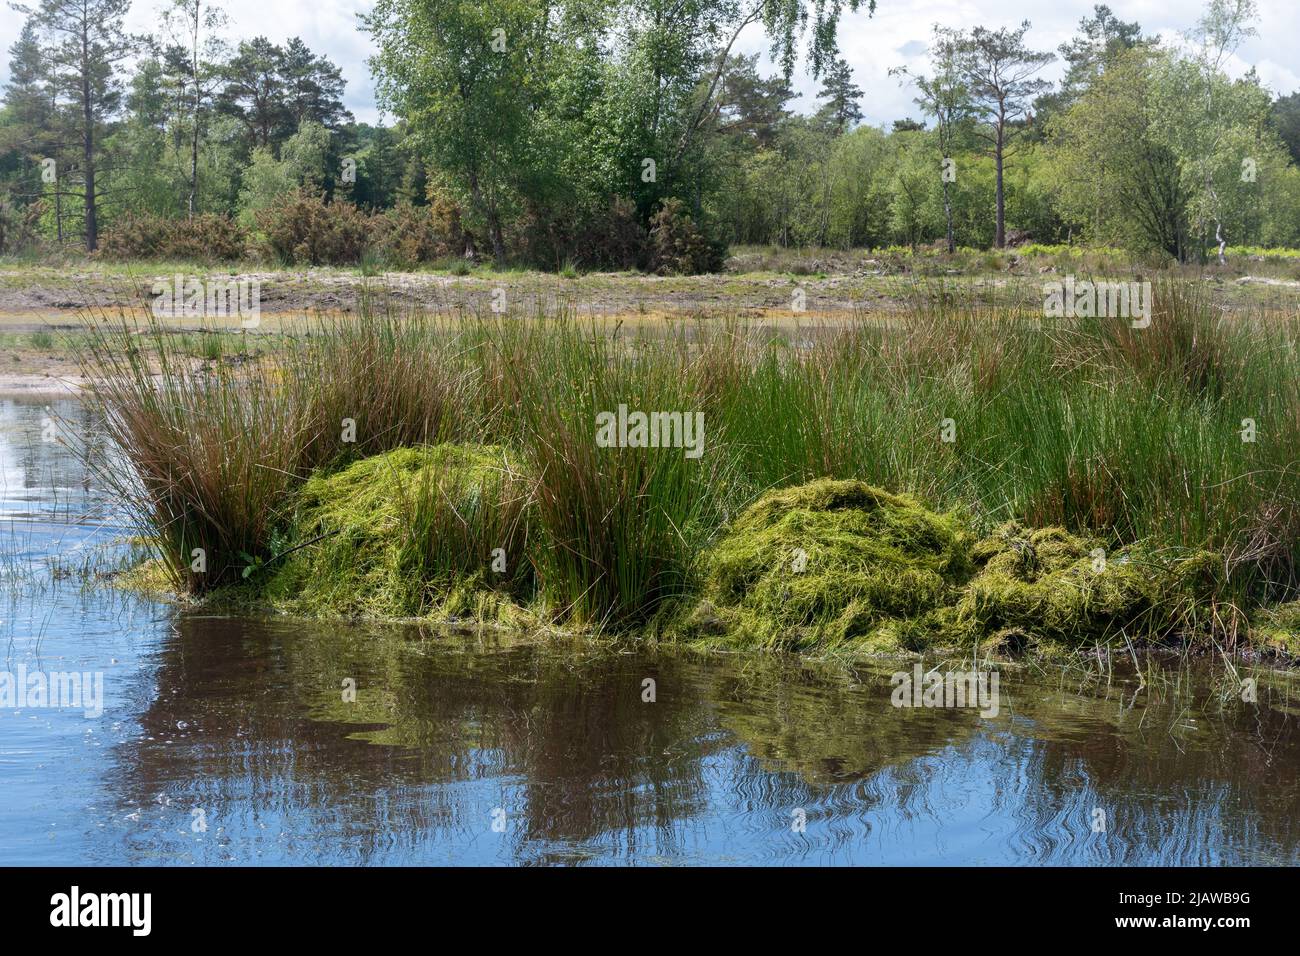 Retirer la plante envahissante Crassula helmsii, une espèce introduite non indigène, d'un grand étang dans le Hampshire, au Royaume-Uni. Piles de Crasula défriché par étang. Banque D'Images